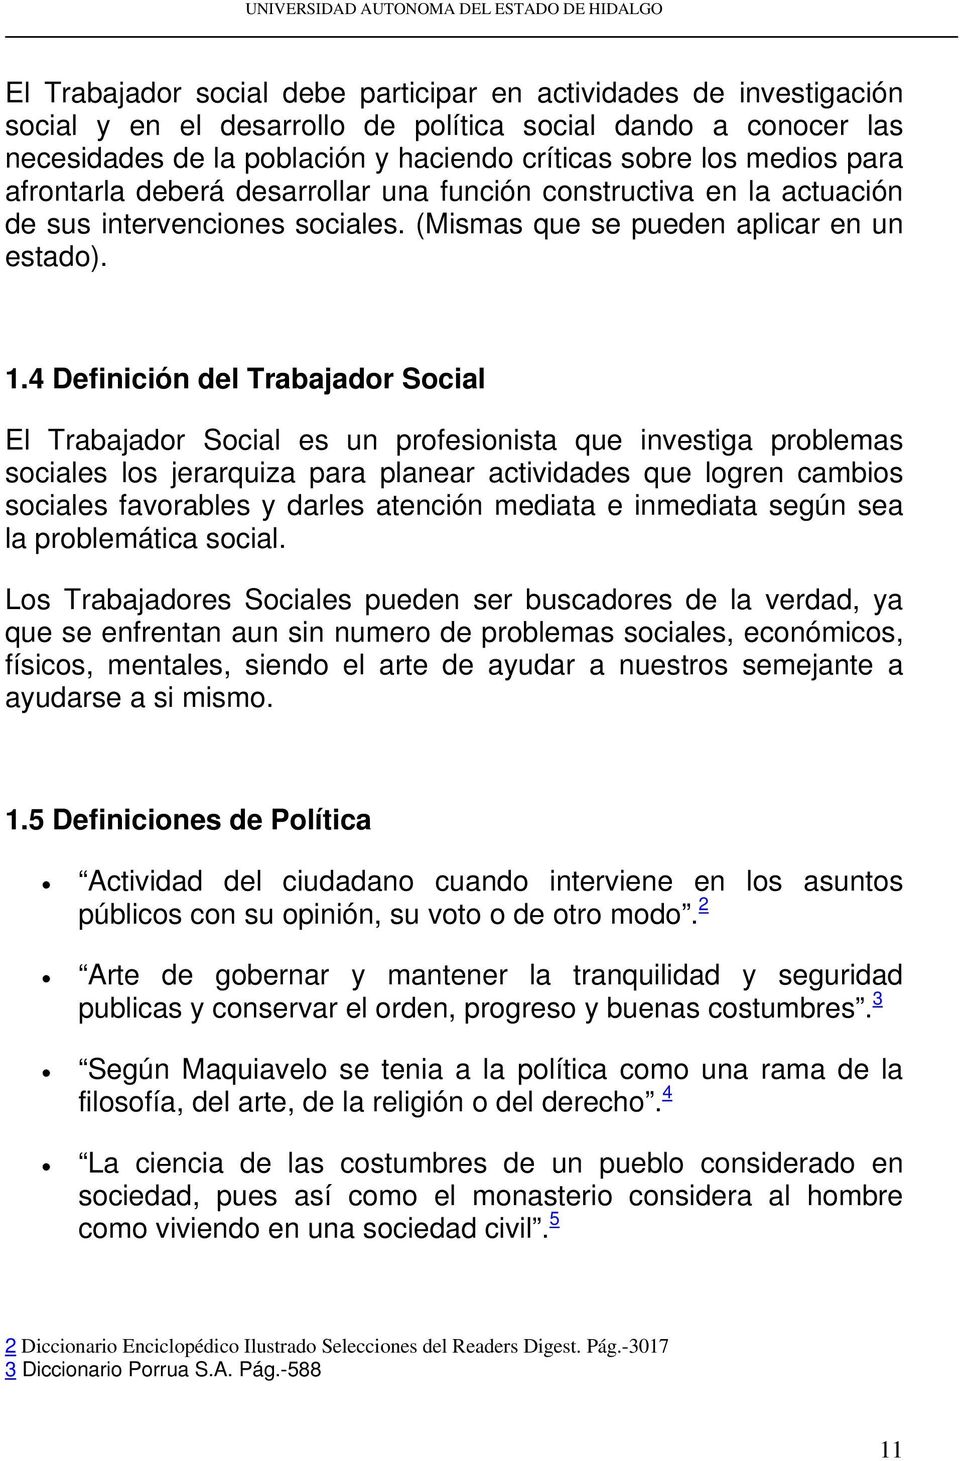 4 Definición del Trabajador Social El Trabajador Social es un profesionista que investiga problemas sociales los jerarquiza para planear actividades que logren cambios sociales favorables y darles